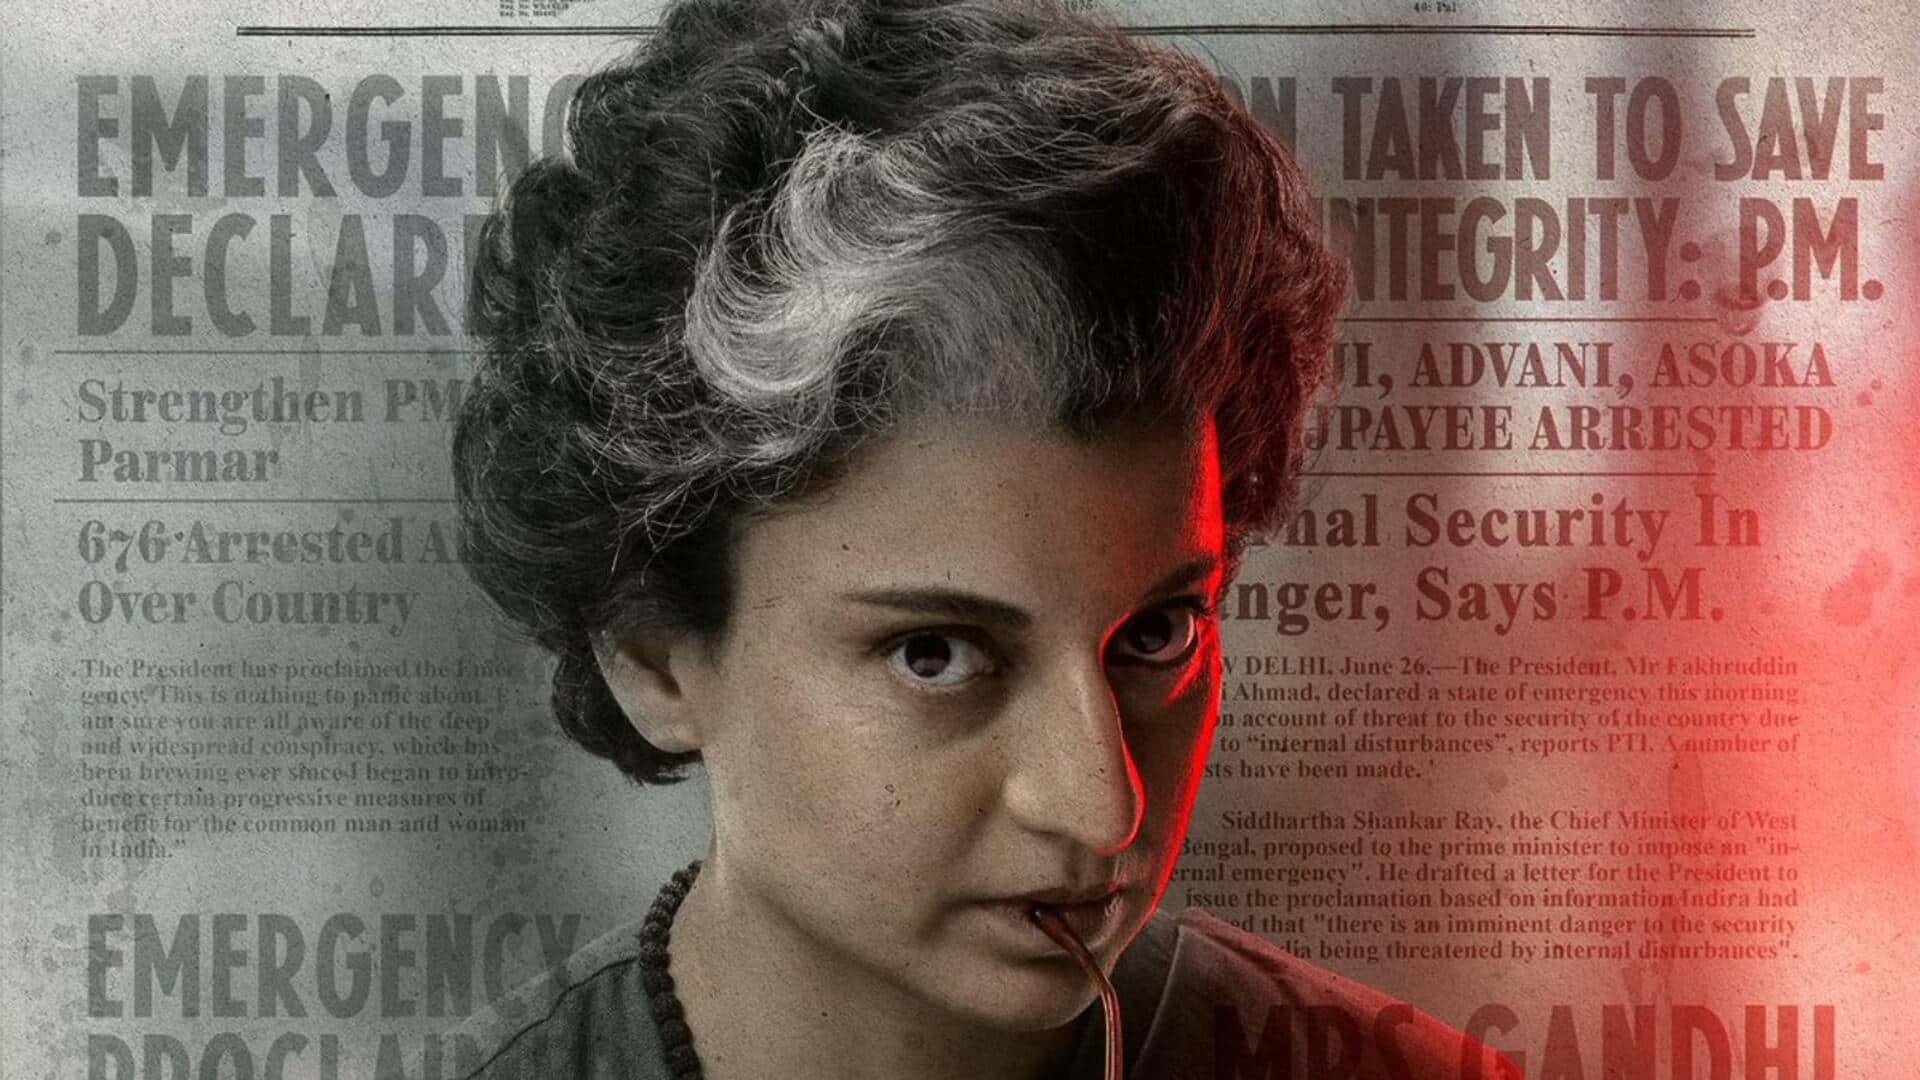 कंगना रनौत की 'इमरजेंसी' का टीजर जारी, पूर्व प्रधानमंत्री इंदिरा गांधी के किरदार में जंचीं अभिनेत्री 